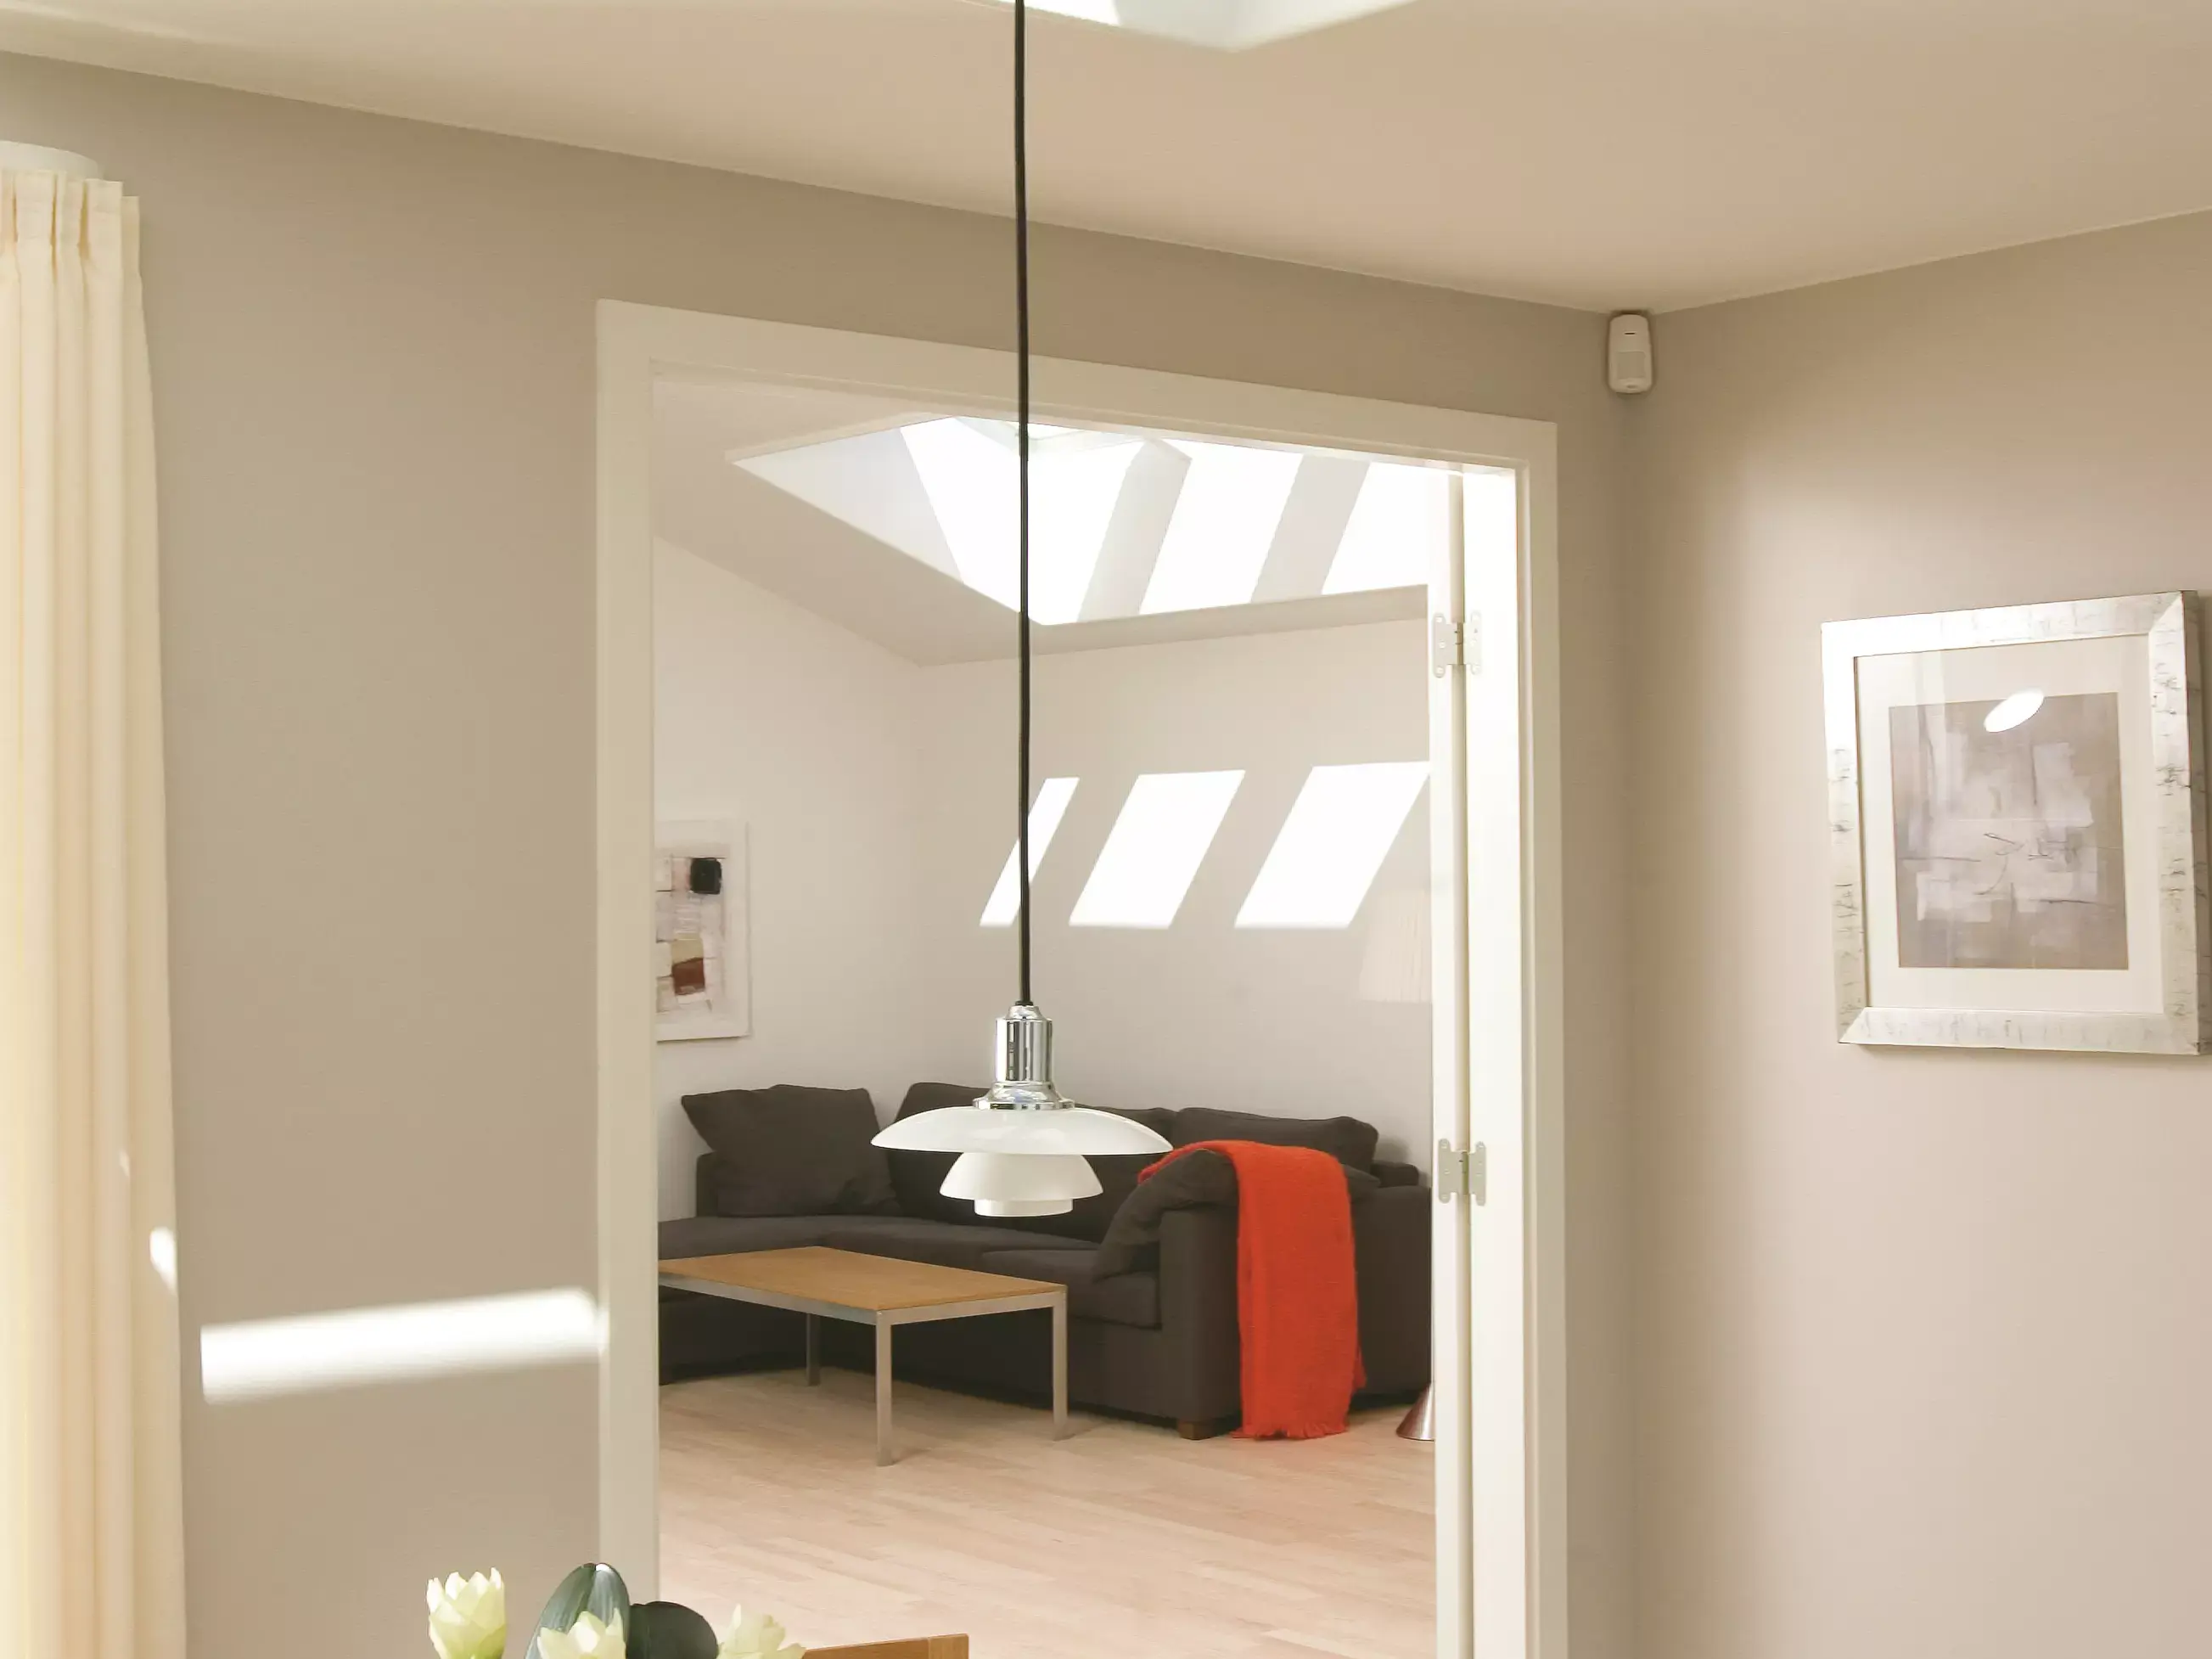 Salon confortable avec canapé et table basse, éclairé par une fenêtre de toit VELUX.